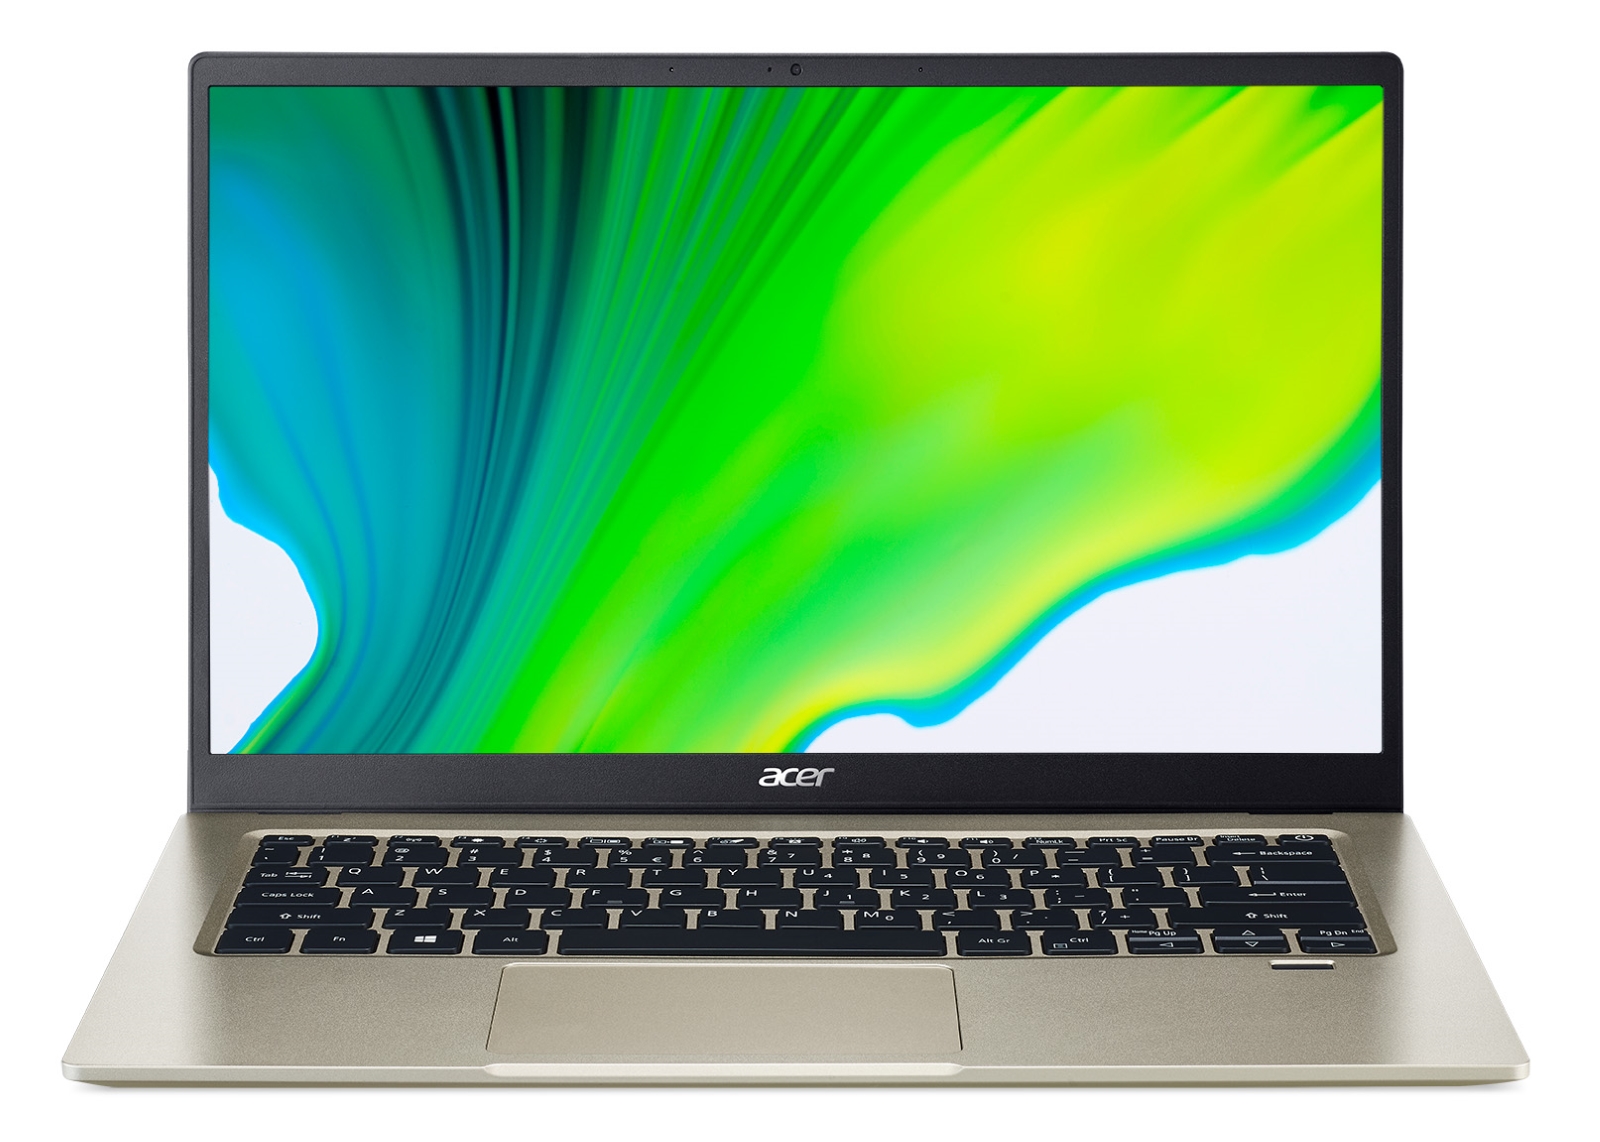 купить Ноутбук Acer SF114-33 (NX.HYPER.001) в Алматы